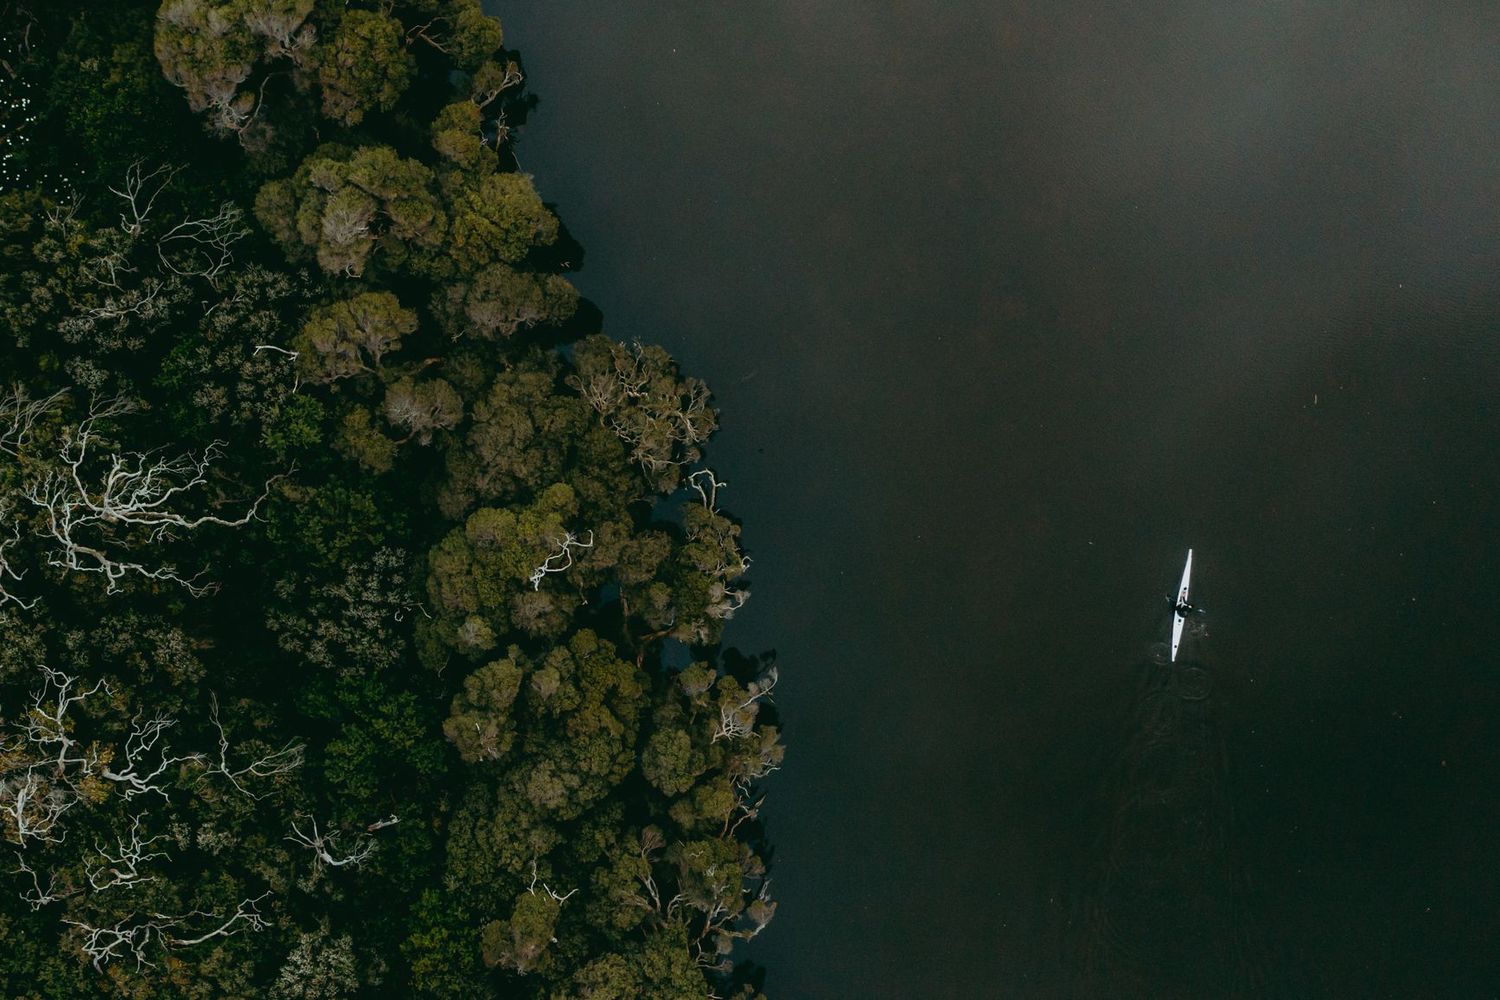 Kayaking on river. Credit Ryan Murphy